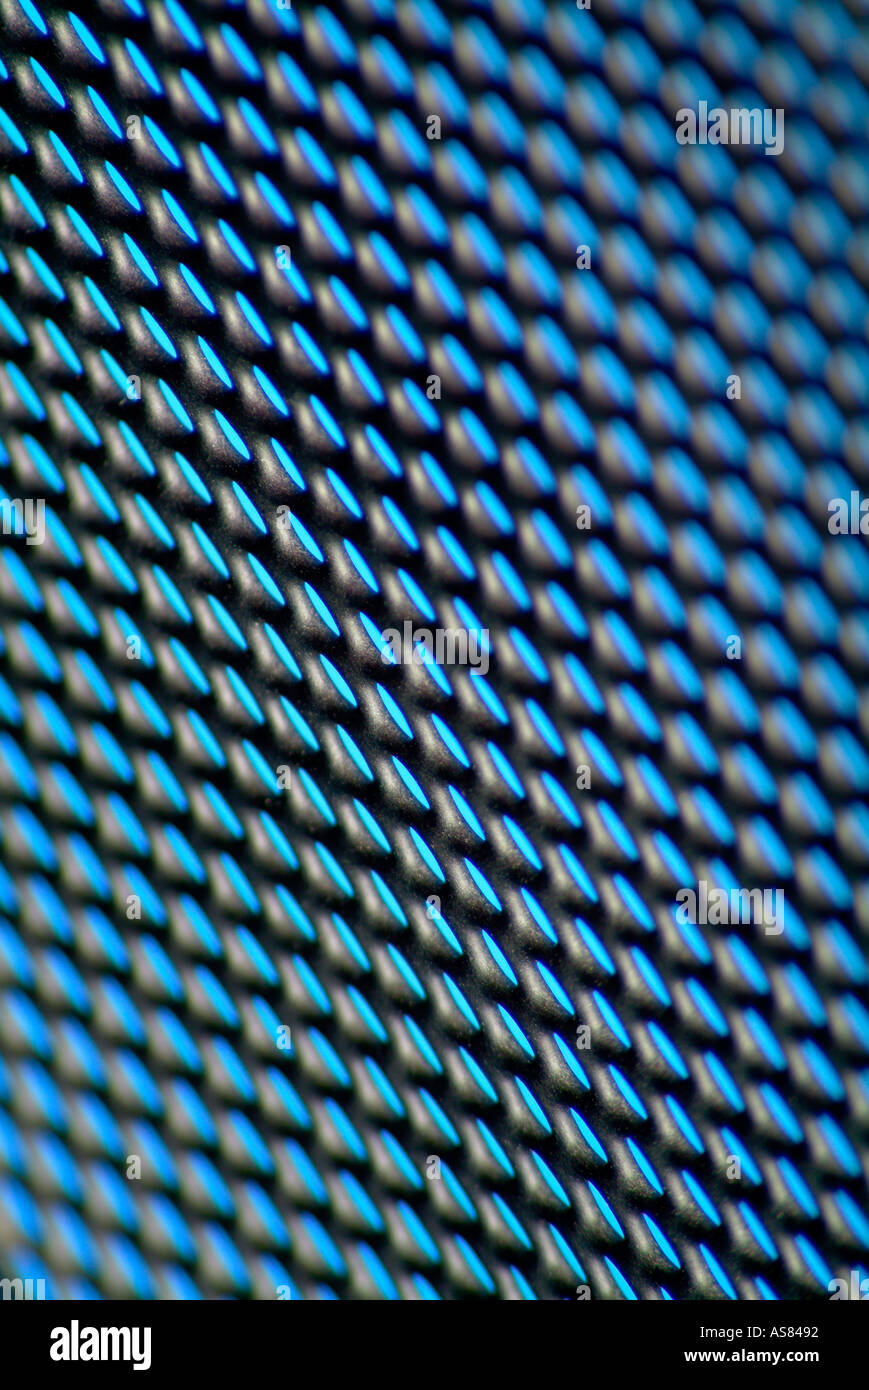 detail of metal mesh pattern Stock Photo